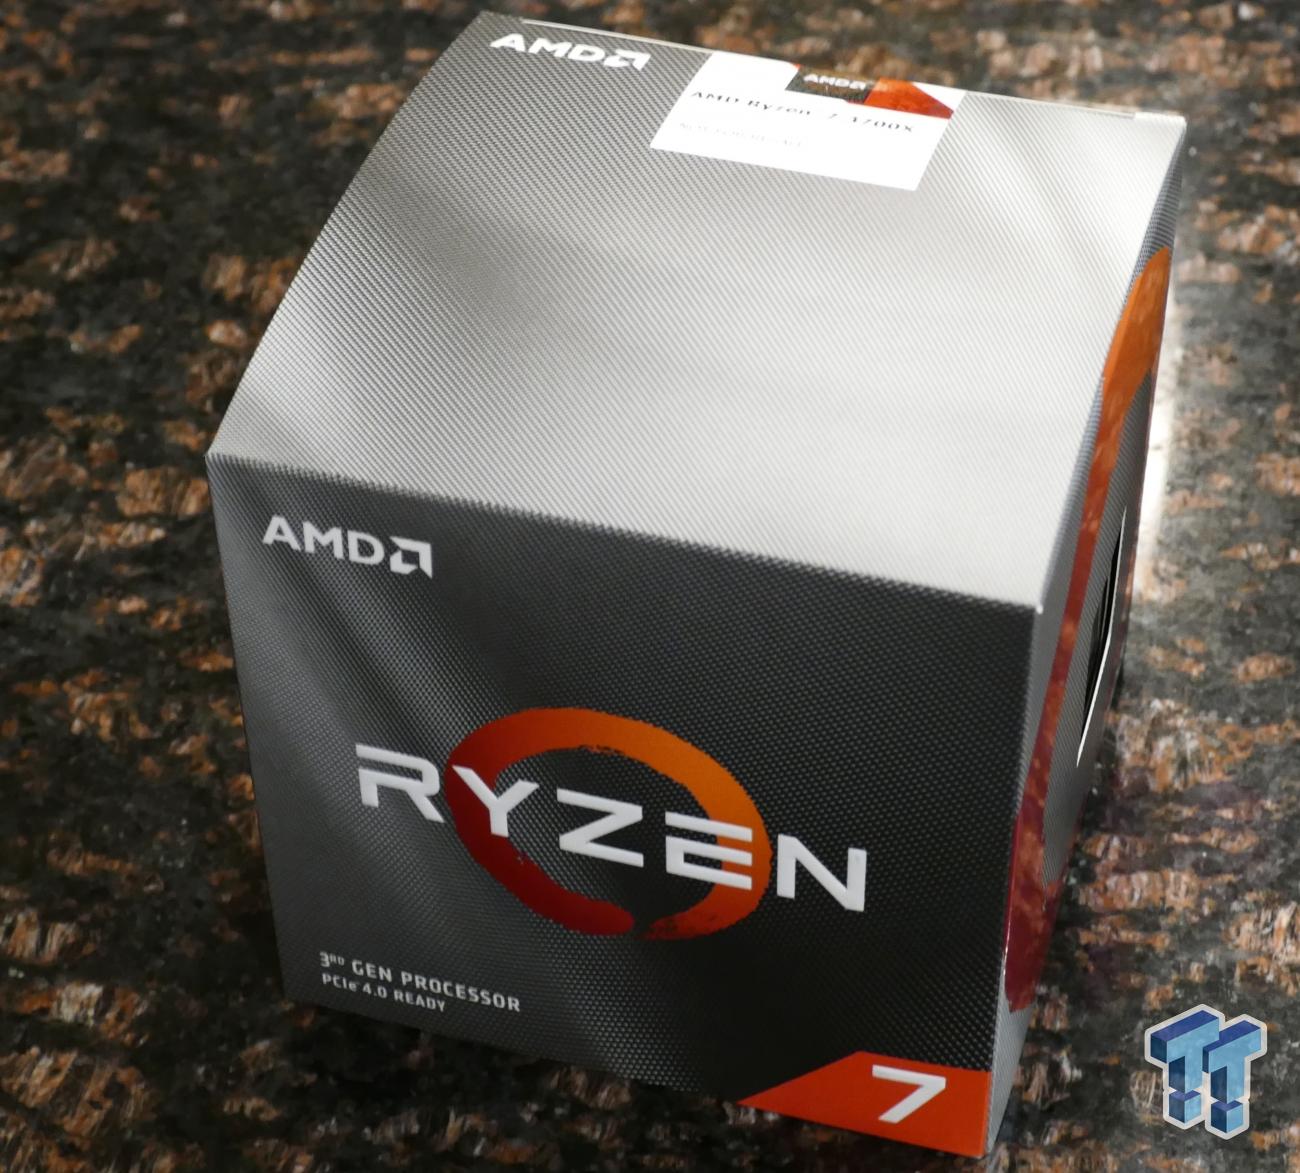 AMD Ryzen 3900X and 3700X (Zen2) Review